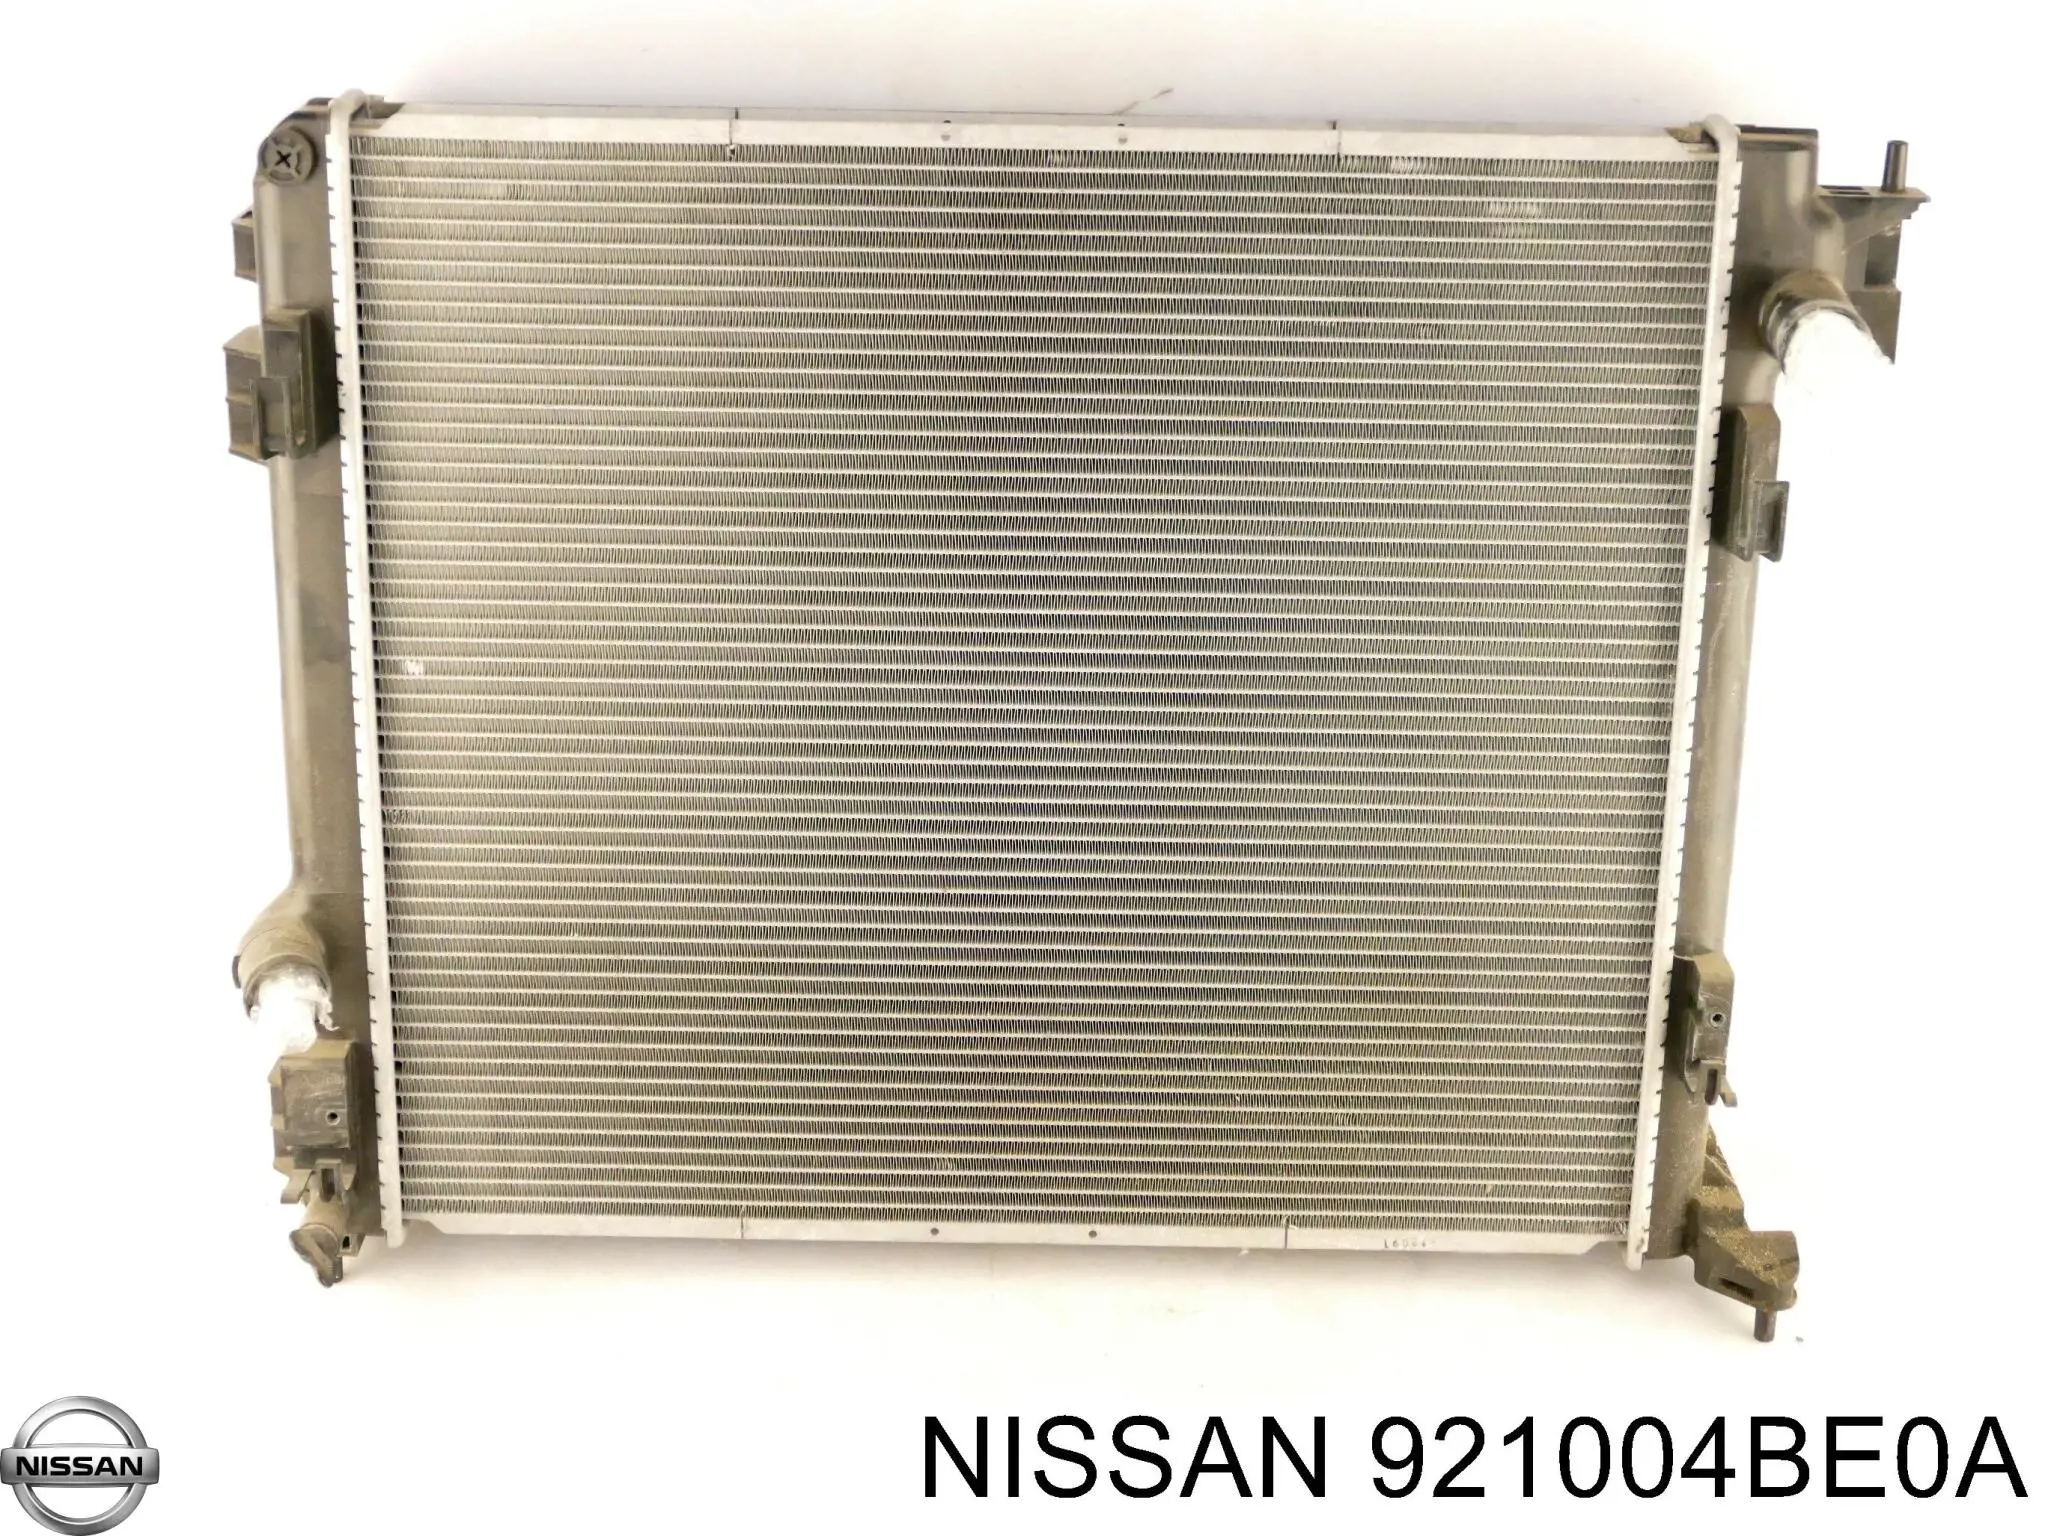 921004BE0A Nissan condensador aire acondicionado